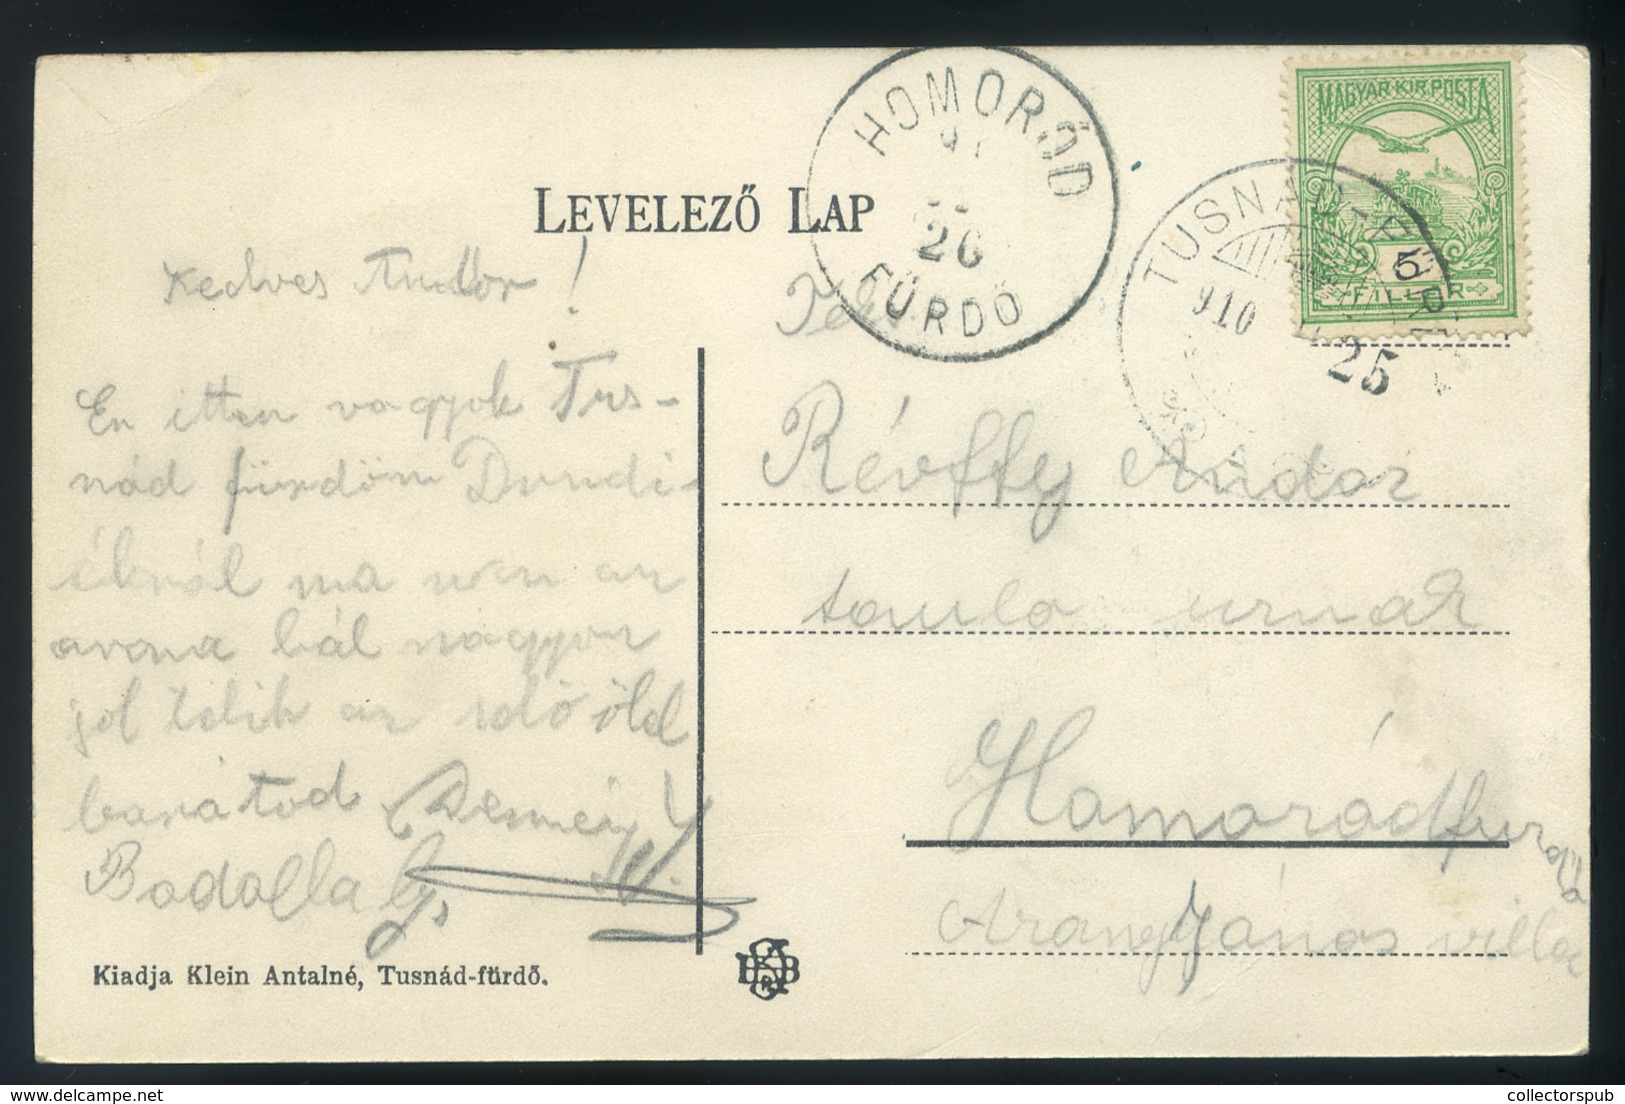 TUSNÁDFÜRDŐ 1910. Art Nouveu , Lepkés Képeslap / TUSNÁDFÜRDŐ 1910 Art Nouveau Butterfly Postcard - Hongrie